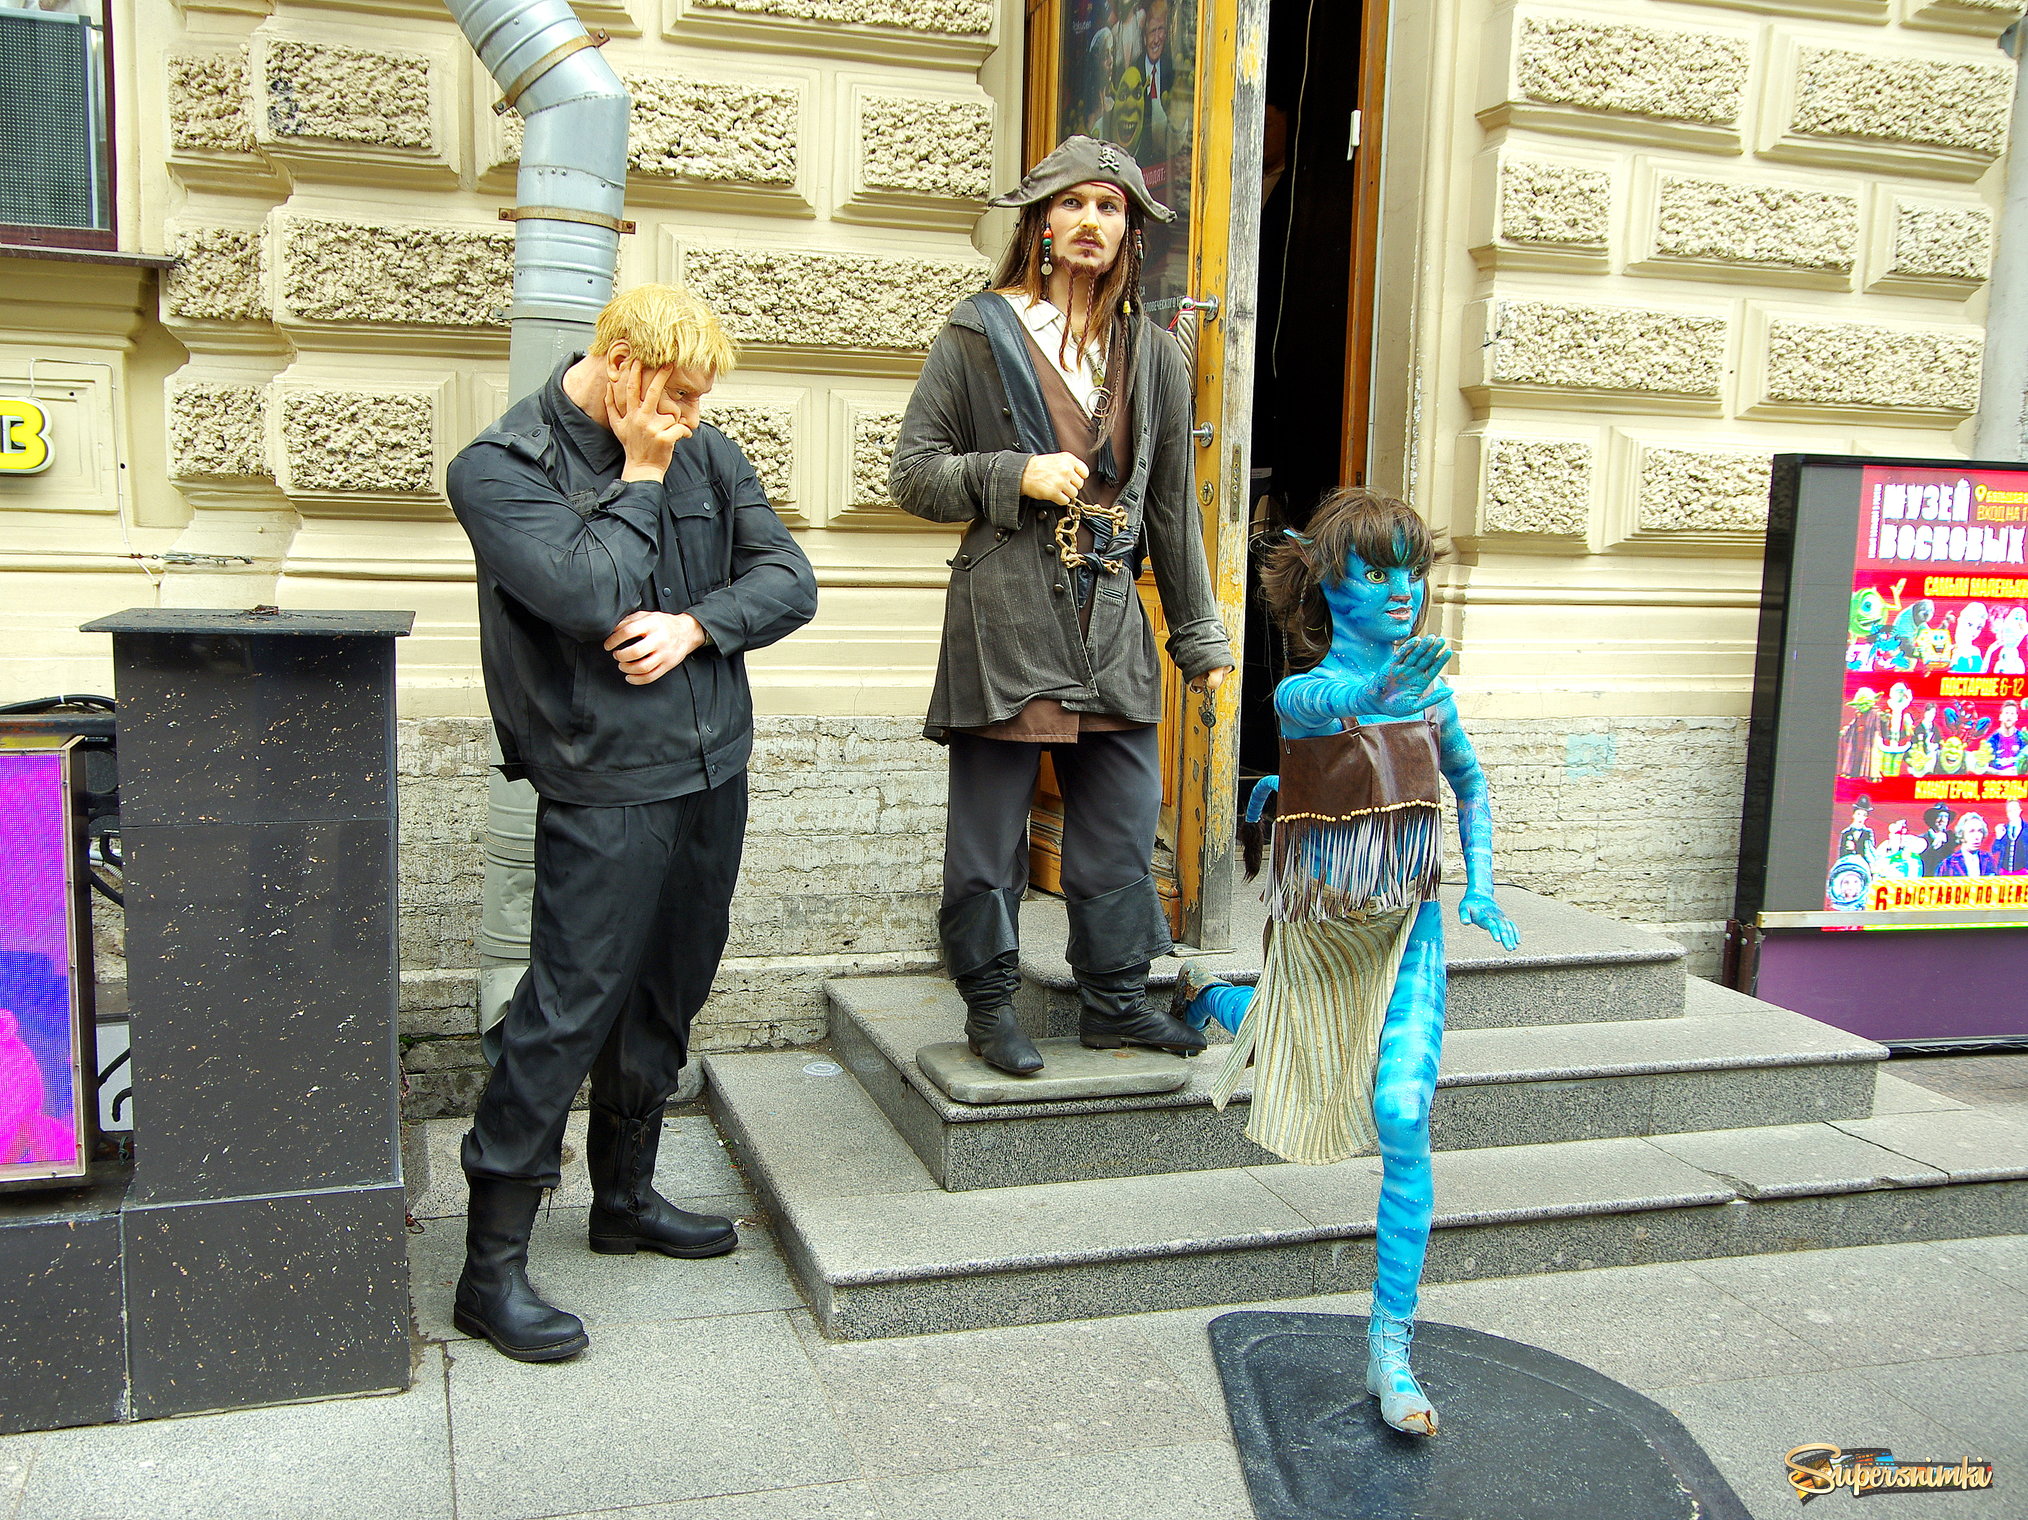 Экспозиция филиала Музея восковых фигур располагается перед выходом на Дворцовую площадь на Большой Морской дом 6, рядом с аркой Главного штаба.